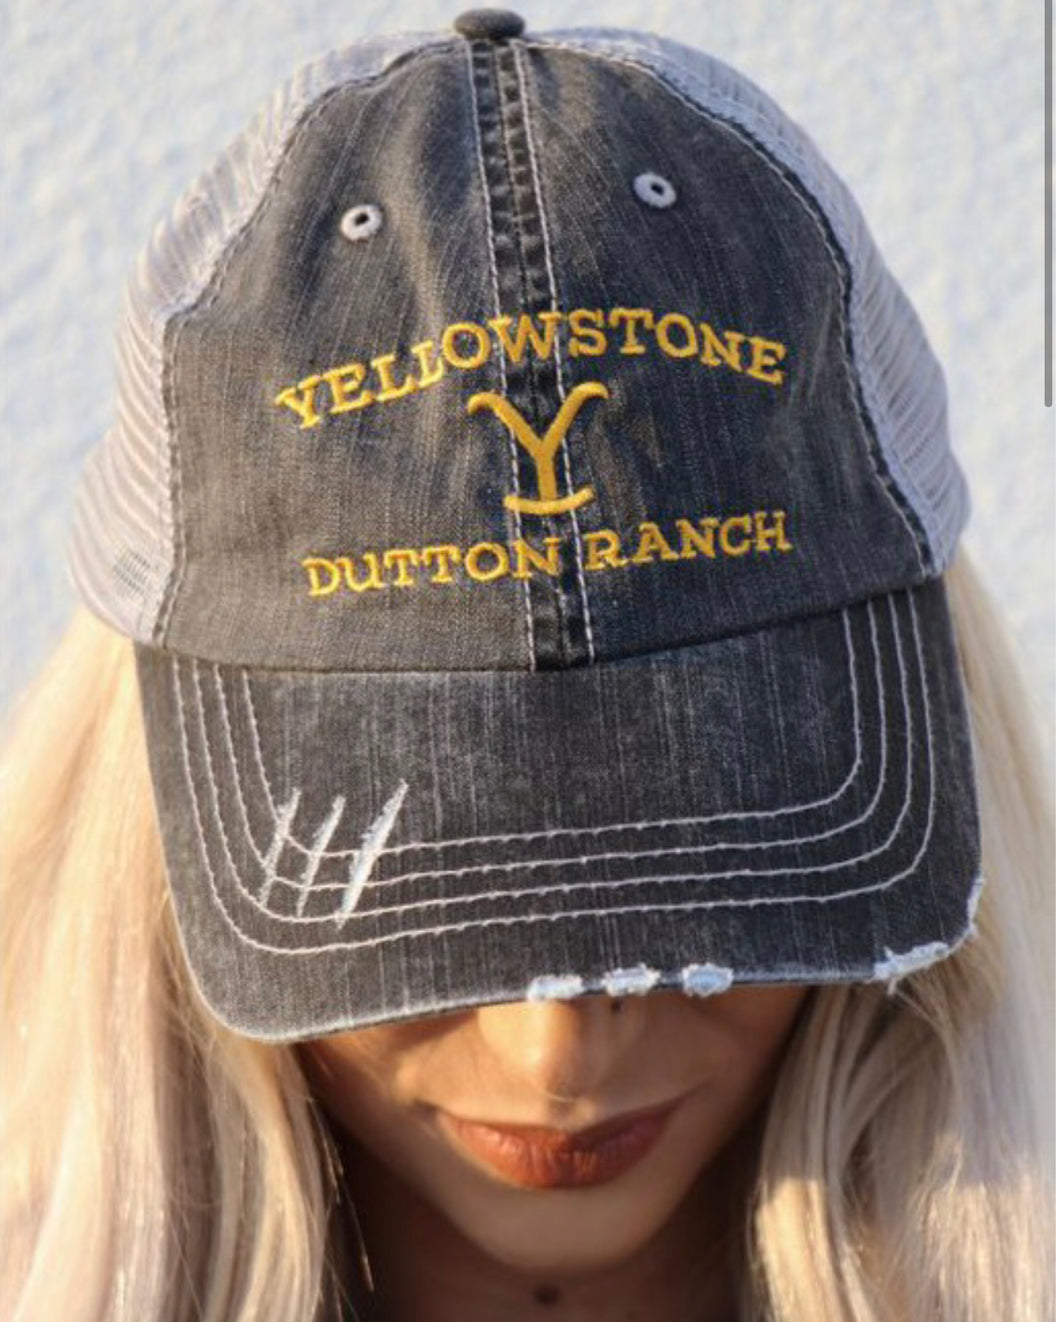 Yellowstone hats